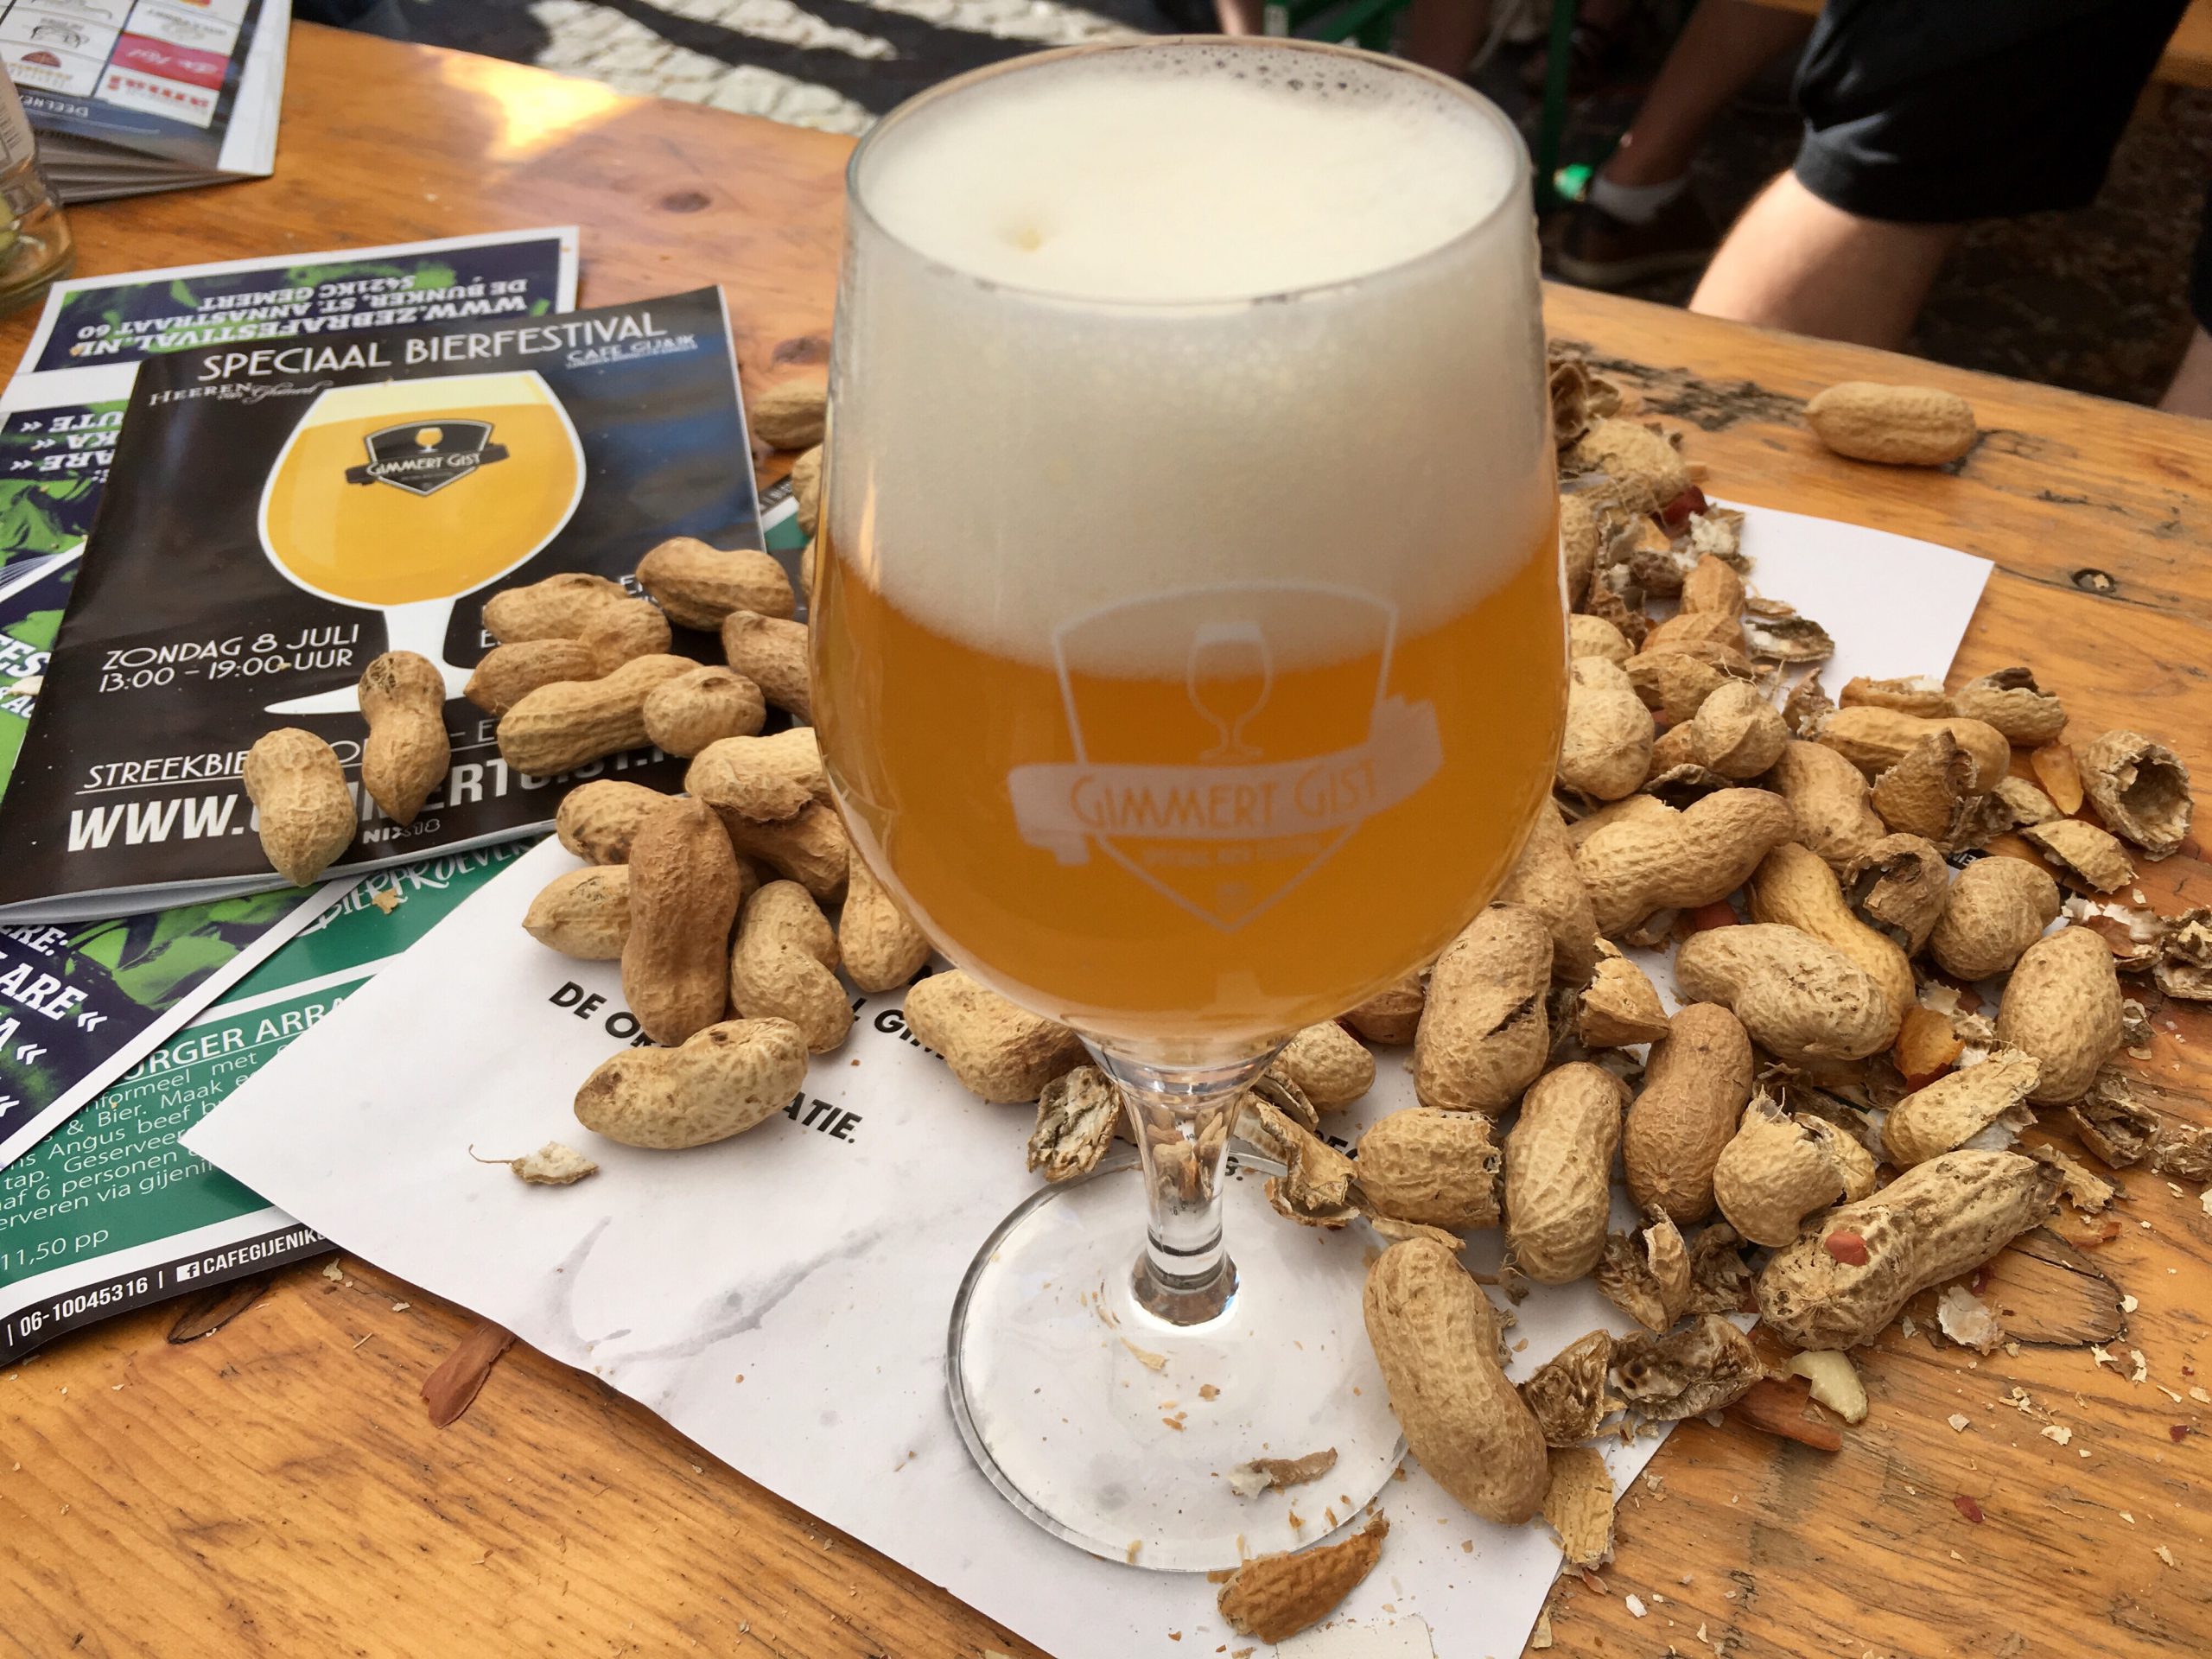 Bier proven op bierfestival Gimmert Gist in Gemert.